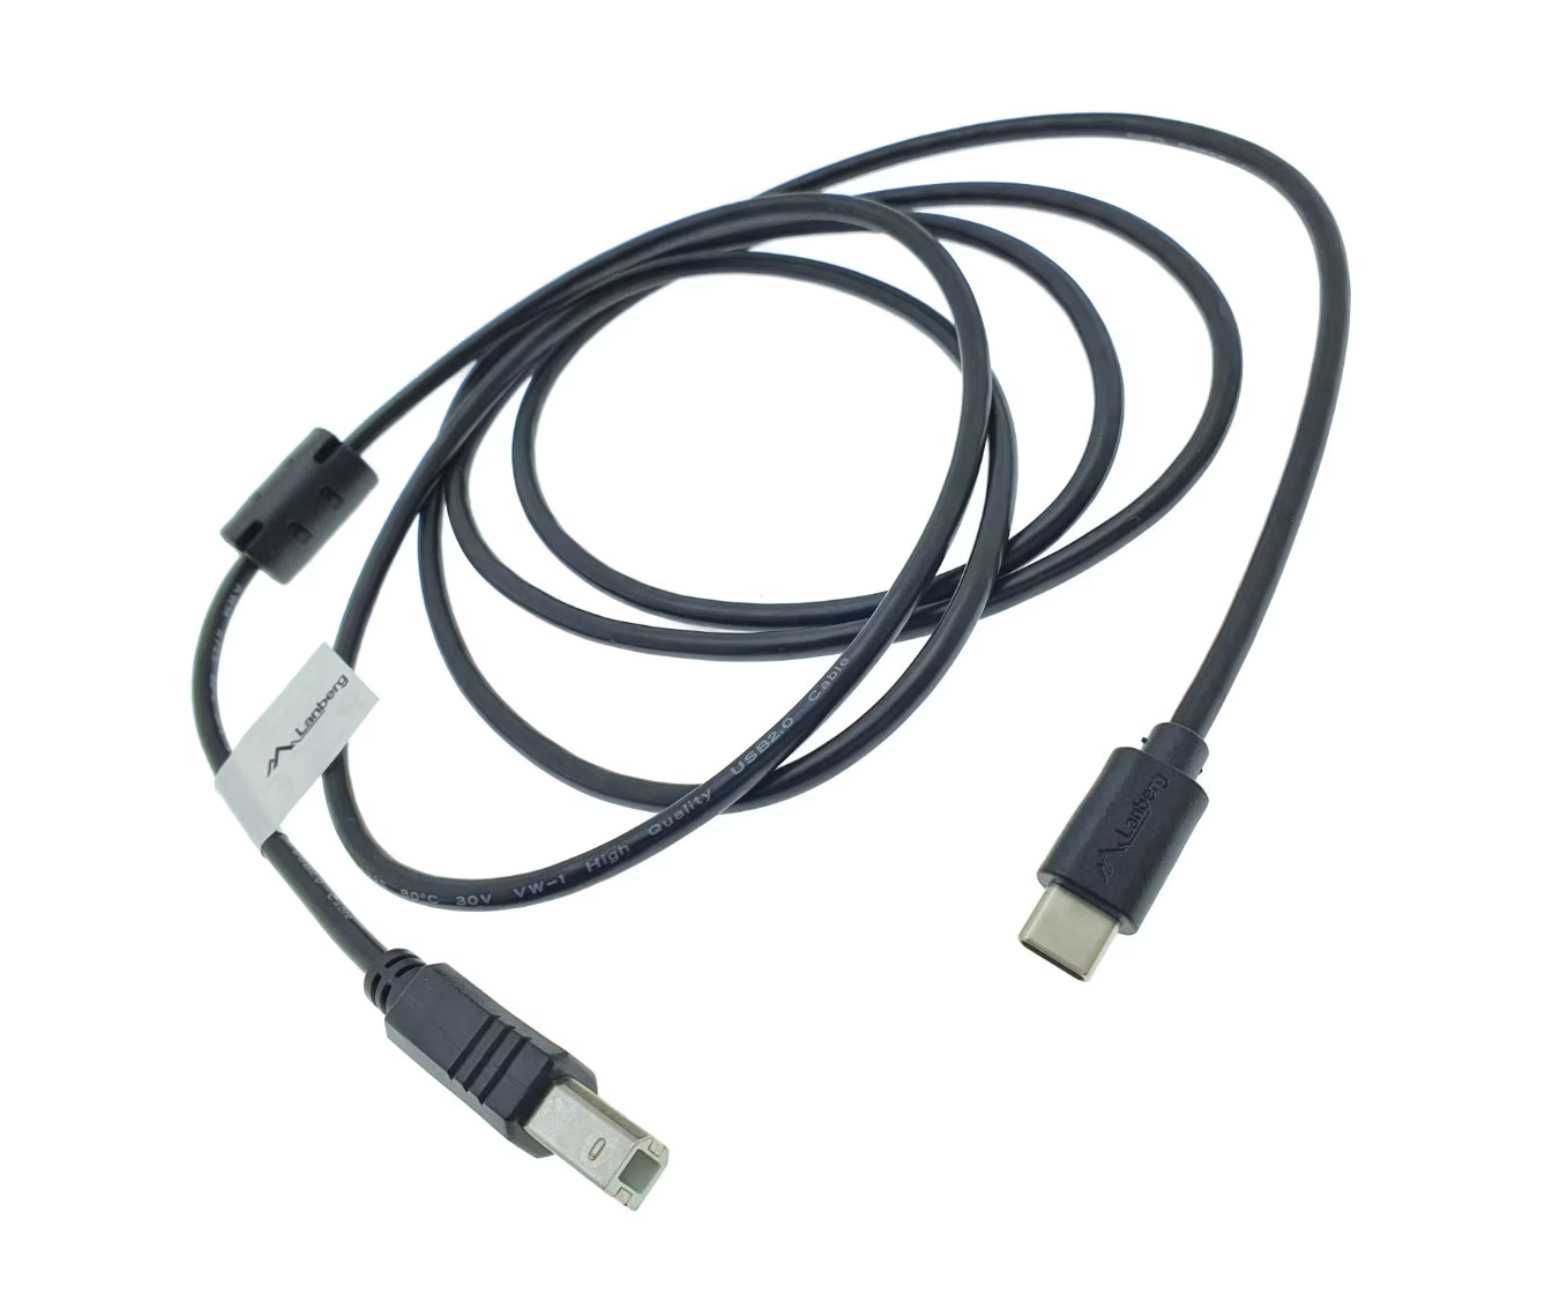 Cablu USB tip C imprimanta USB 2.0, 1.8 m, Lanberg, USB B la USB-C